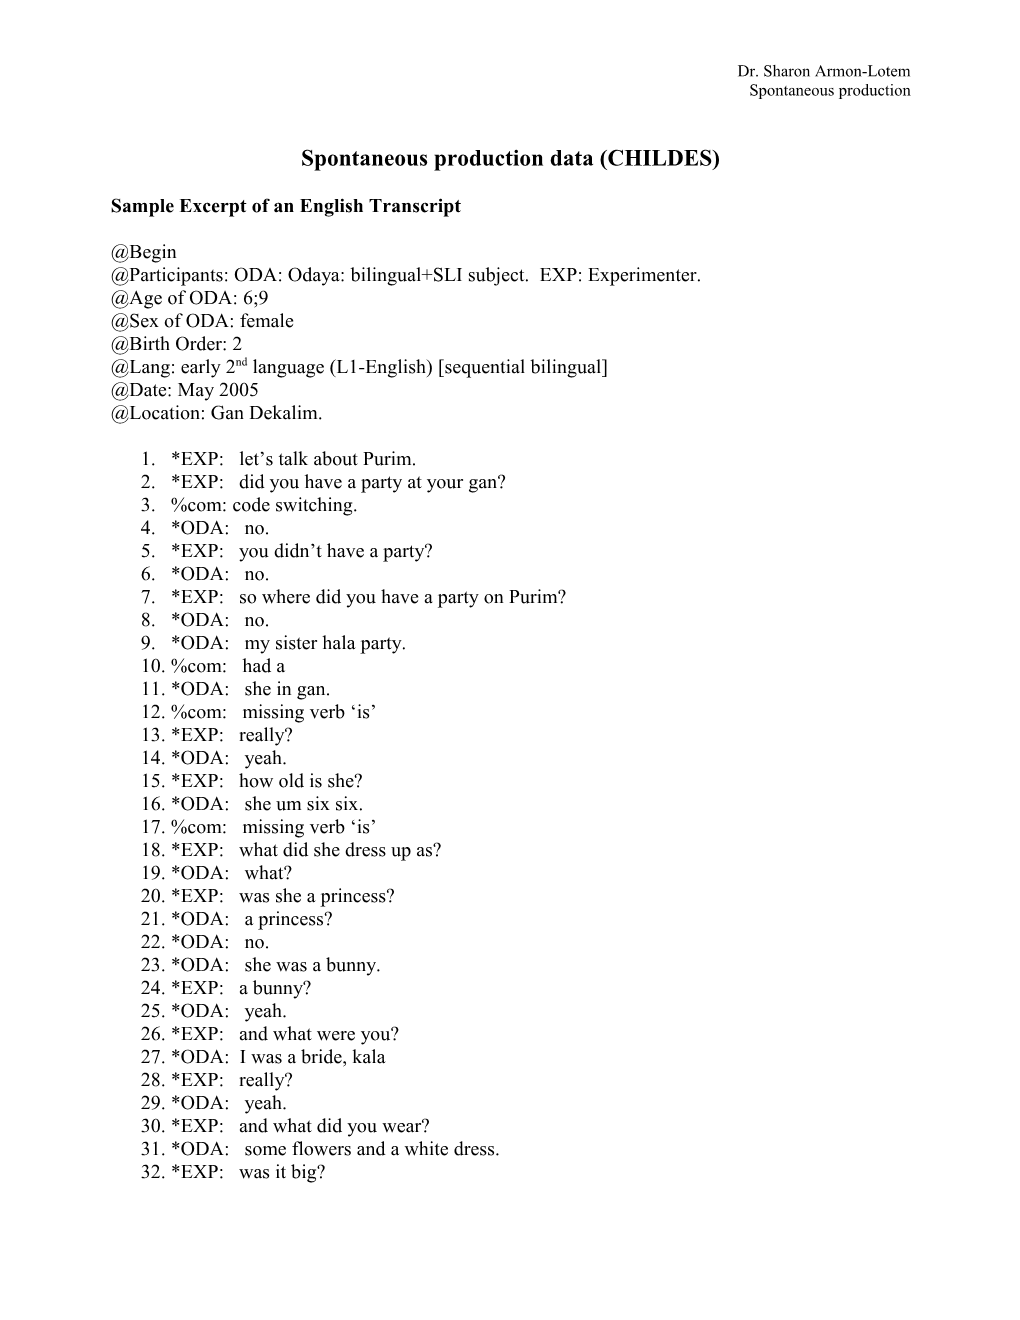 Sample Excerpt of Hebrew Transcript